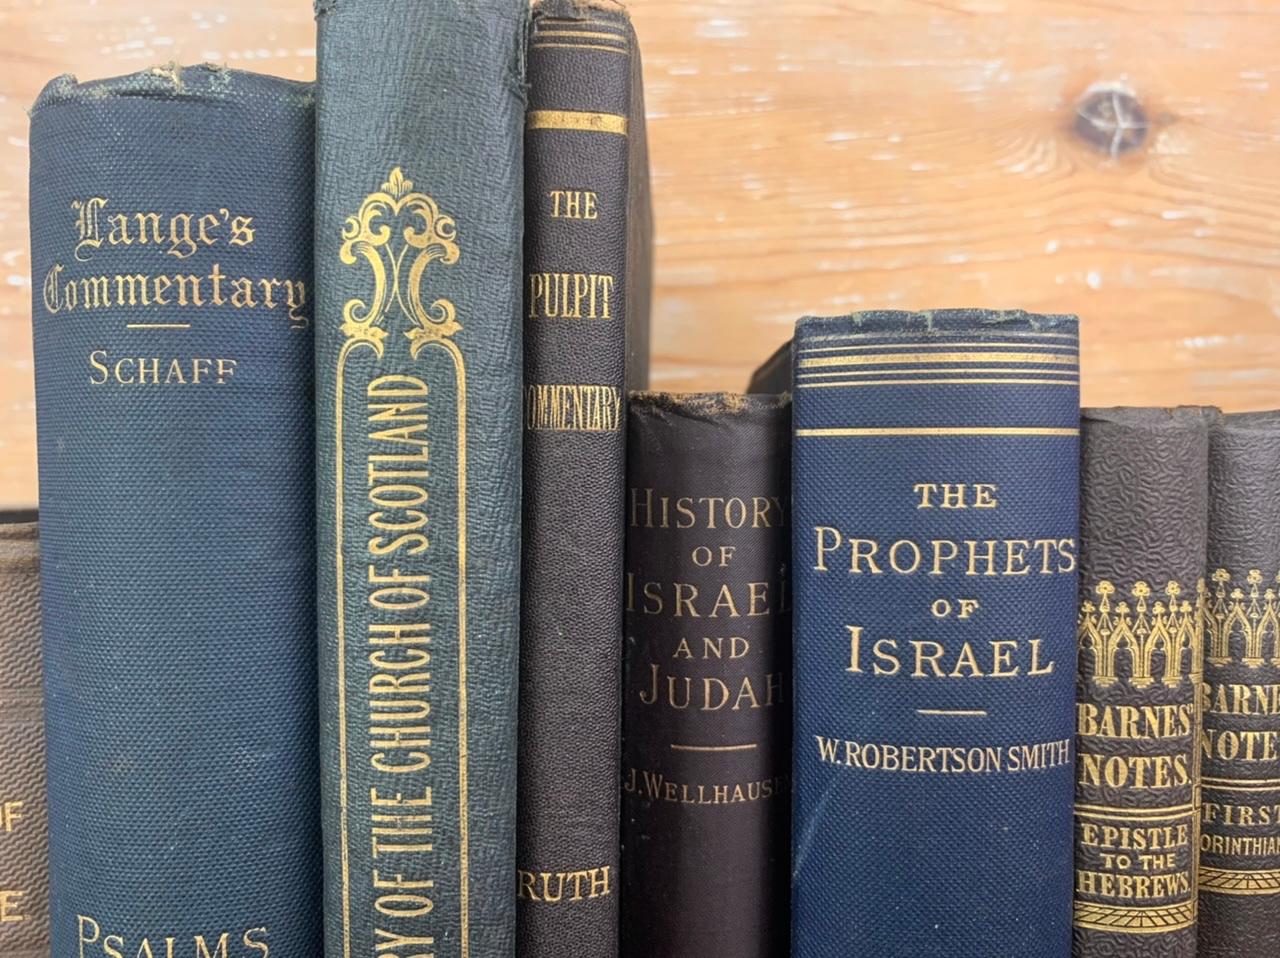 Viele Bücher zu verschiedenen Themen wie die Kirche von Scoltand oder die Geschichte Israels. Reihe alter Bücher aus dem 19. Jahrhundert. Aus einer alten protestantischen Bibliothek in der Nähe von Le Havre in Frankreich. Diese schönen Bücher sind